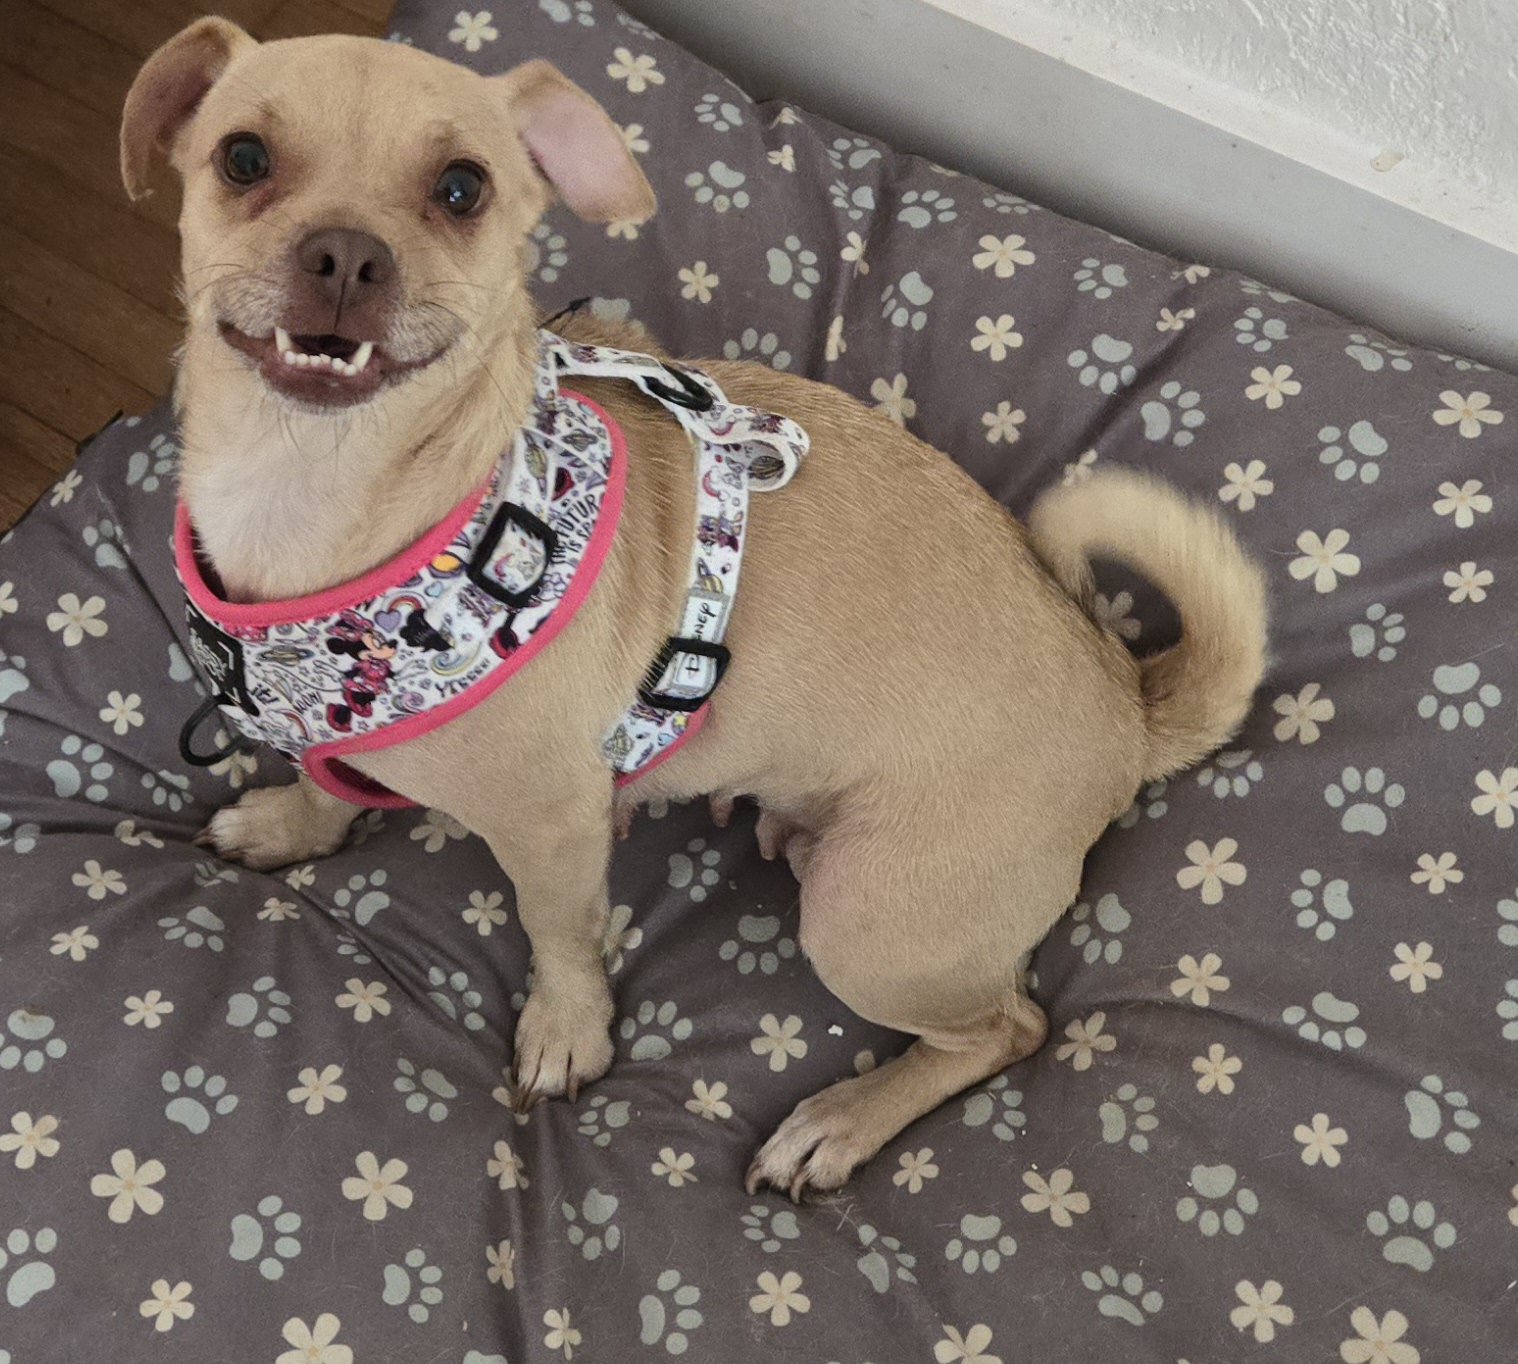 adoptable Dog in Miami, FL named Z COURTESY POST Paris